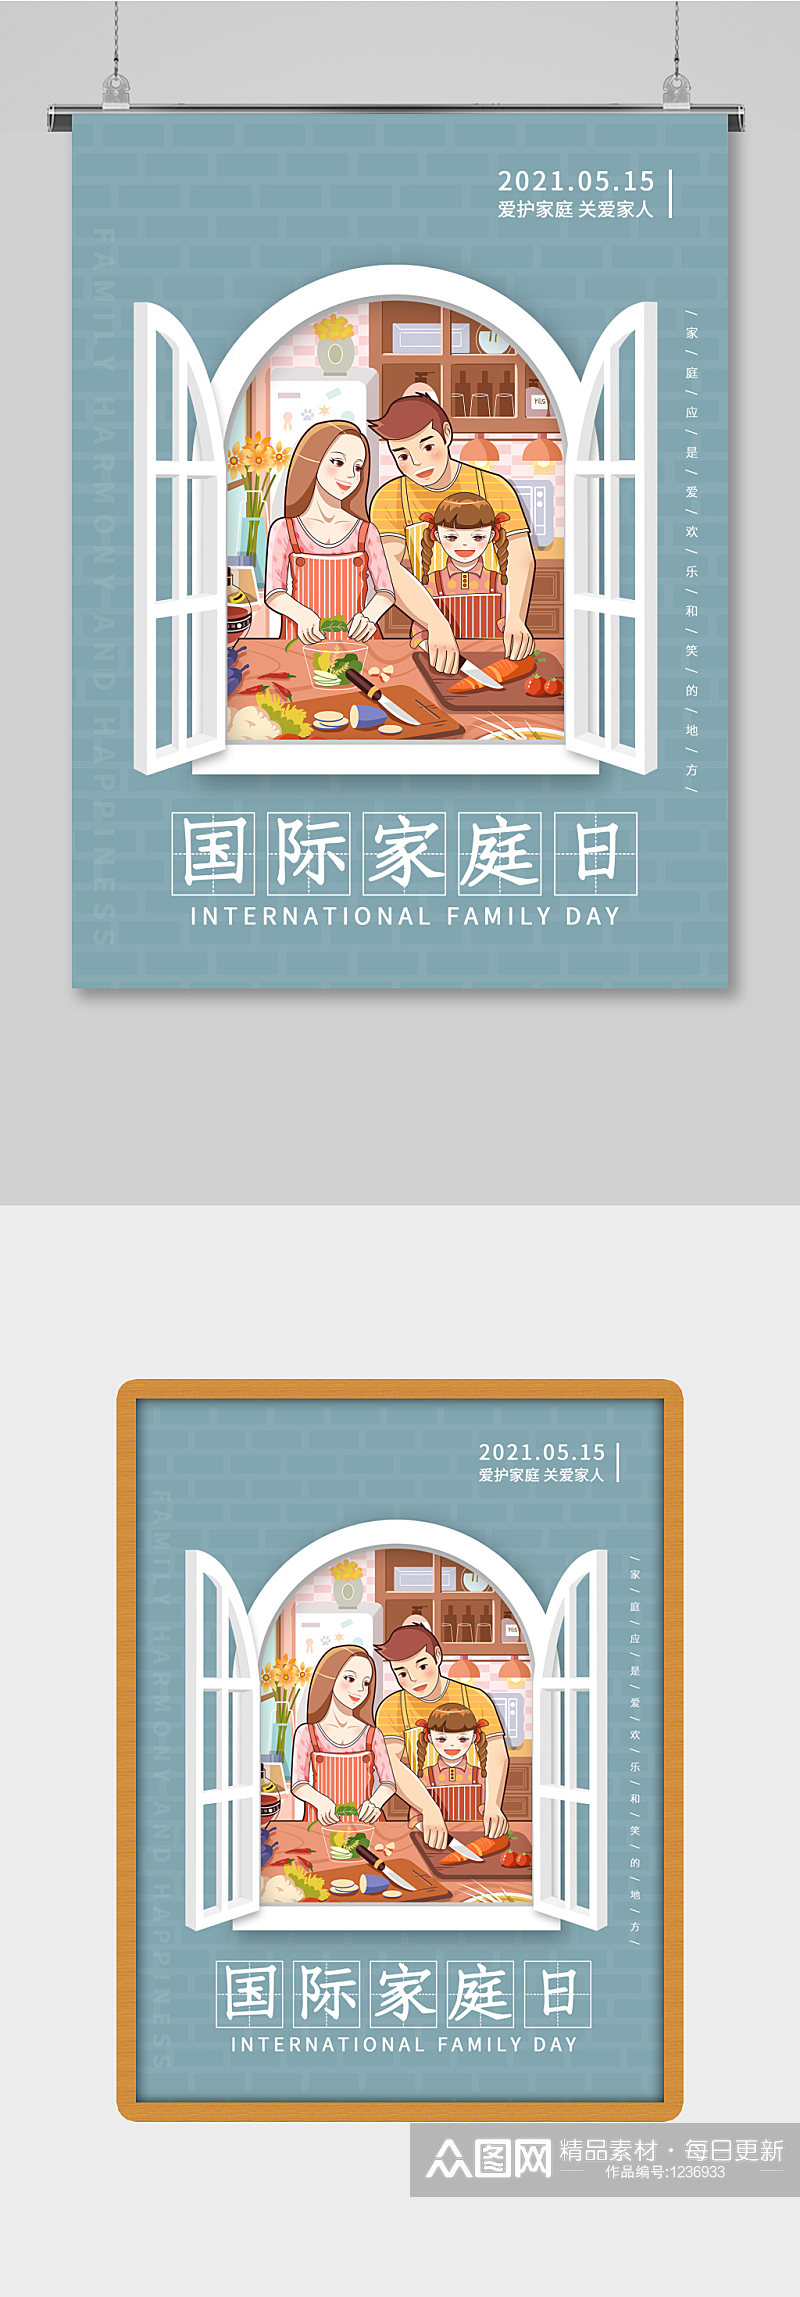 蓝色简约国际家庭日幸福一家人海报设计素材